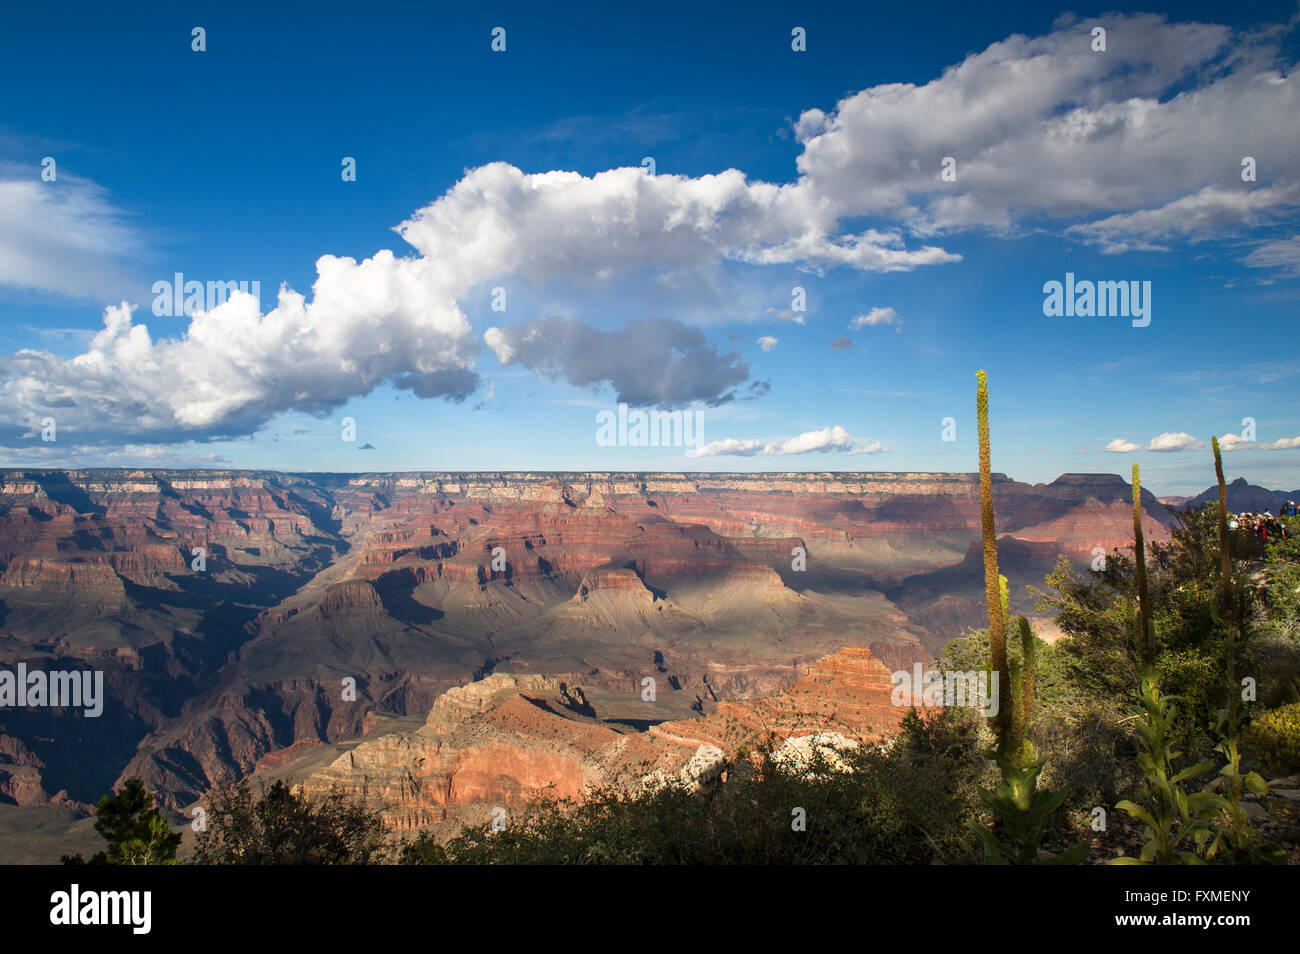 Grand Canyon National Park, Arizona, United States Stock Photo